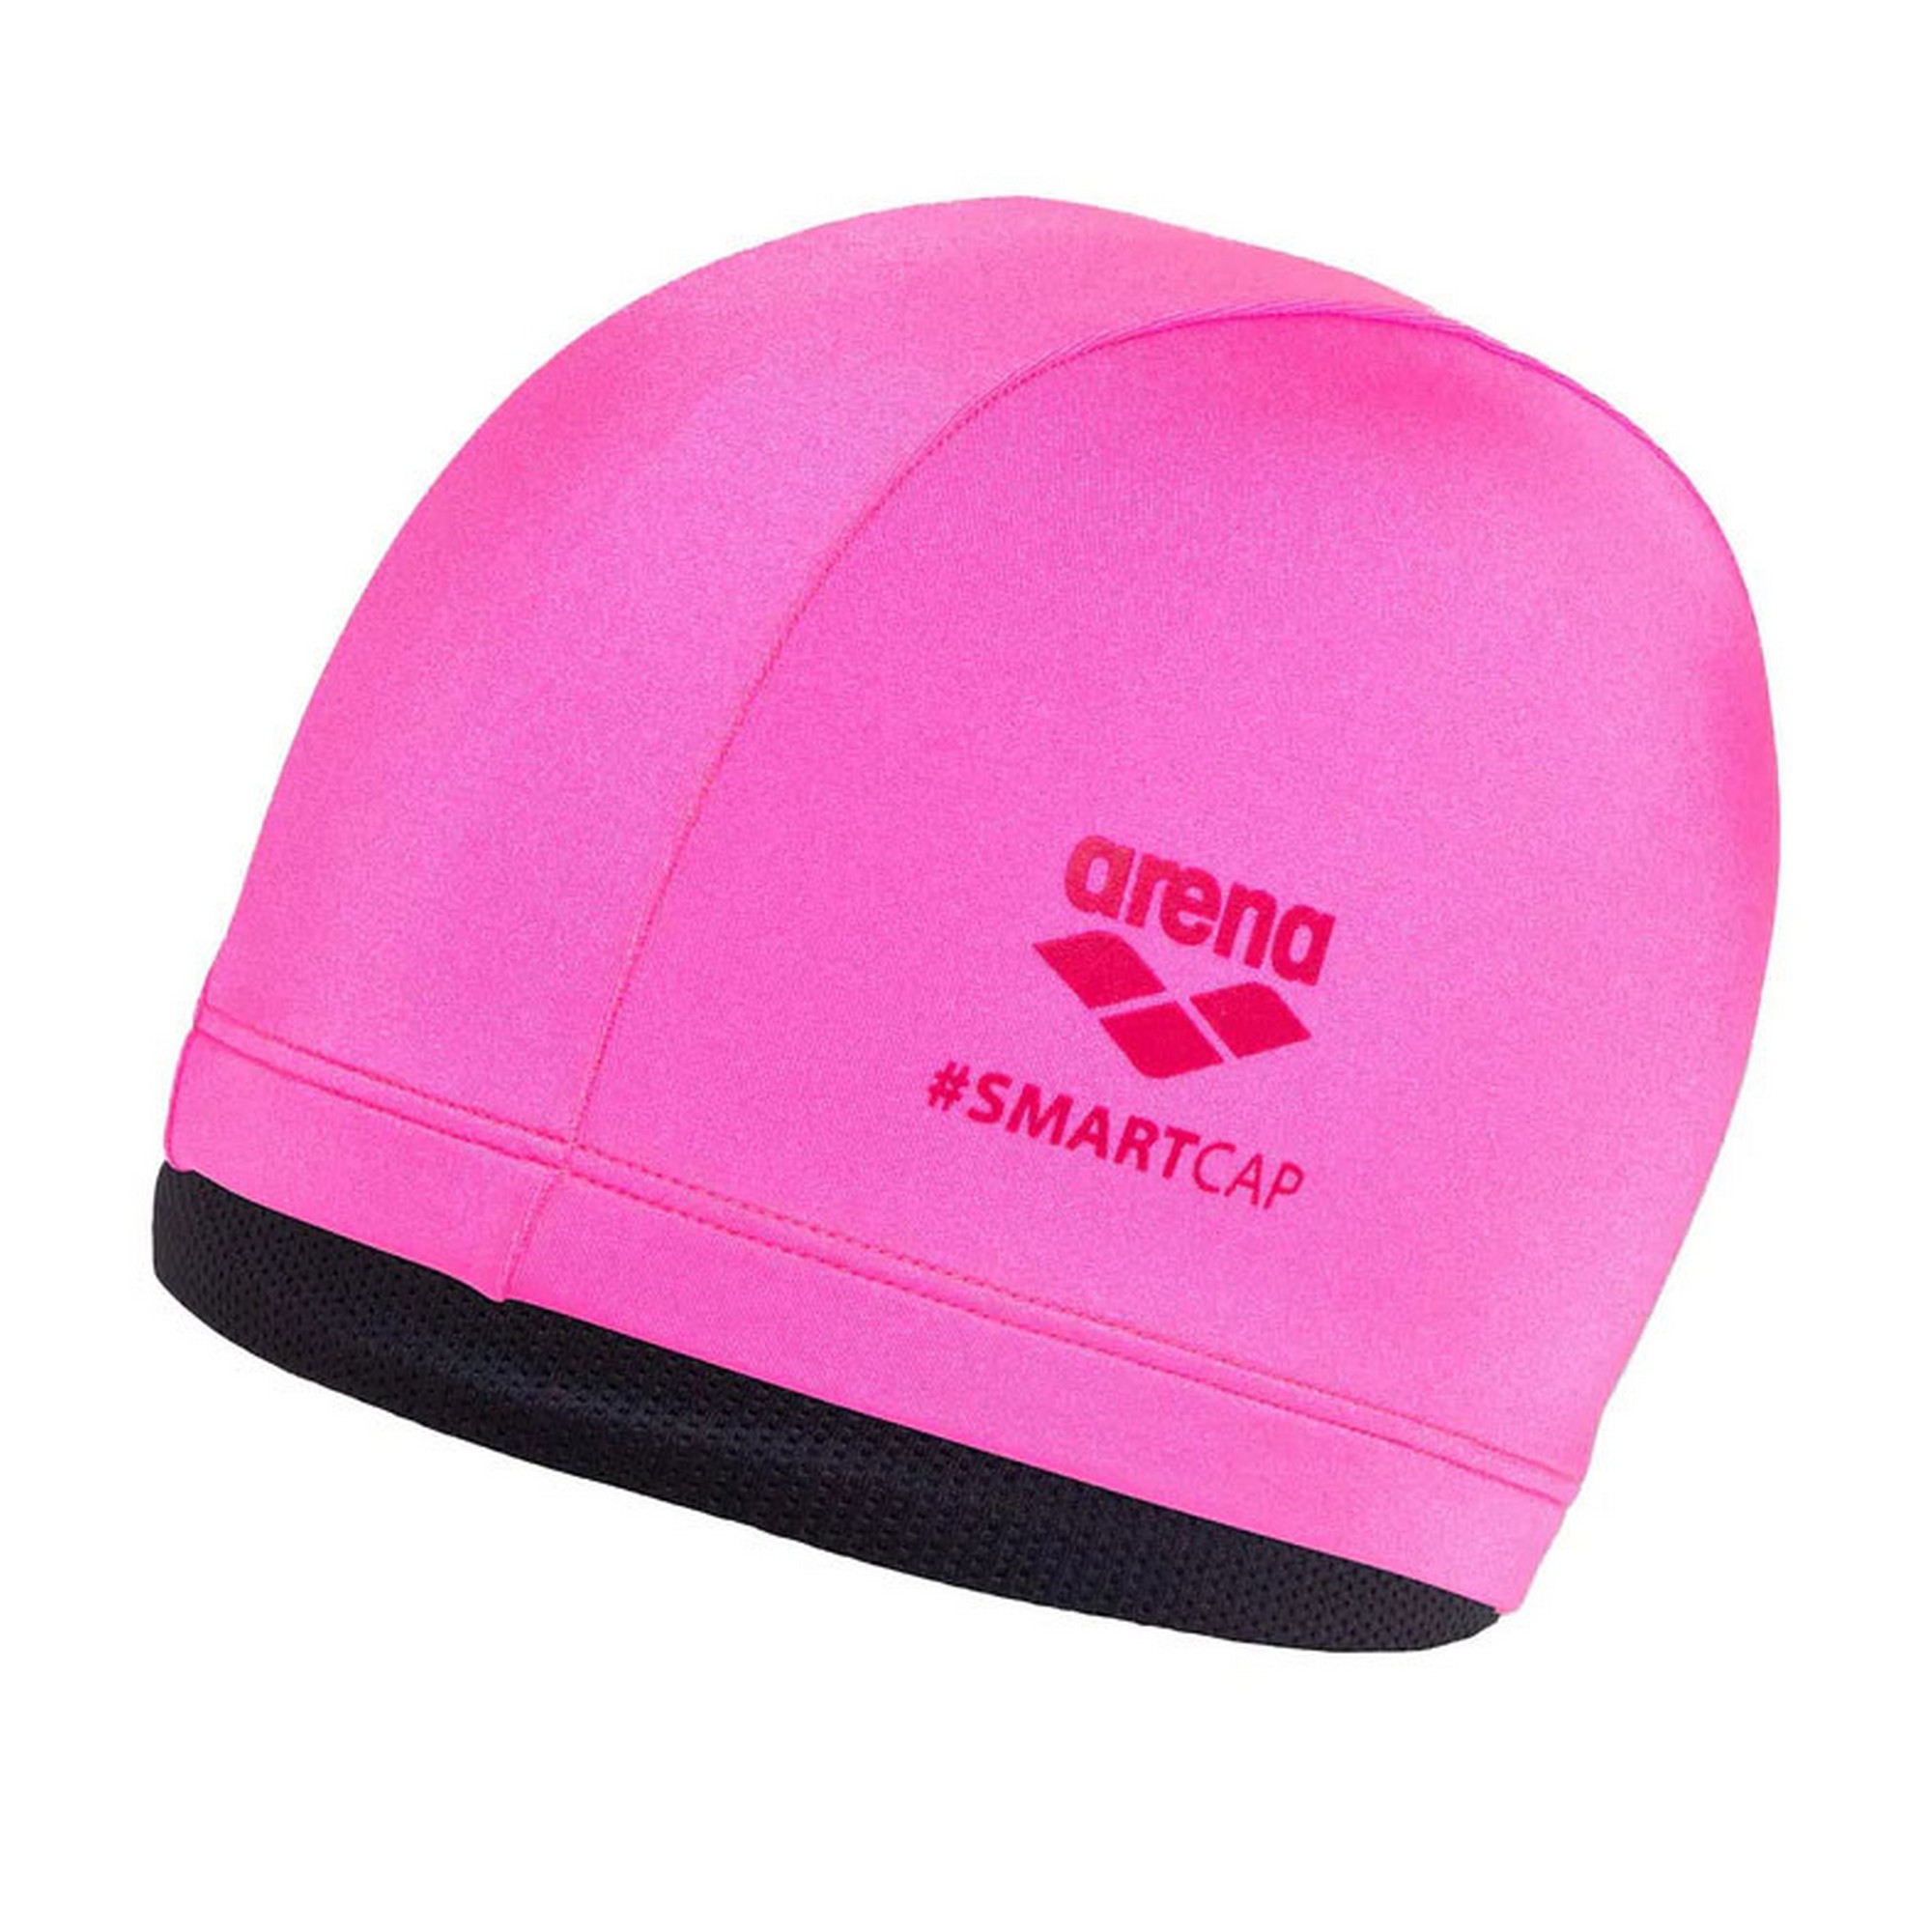 Шапочка для плавания детская Arena Smart Cap 004410100 розовый,  - купить со скидкой